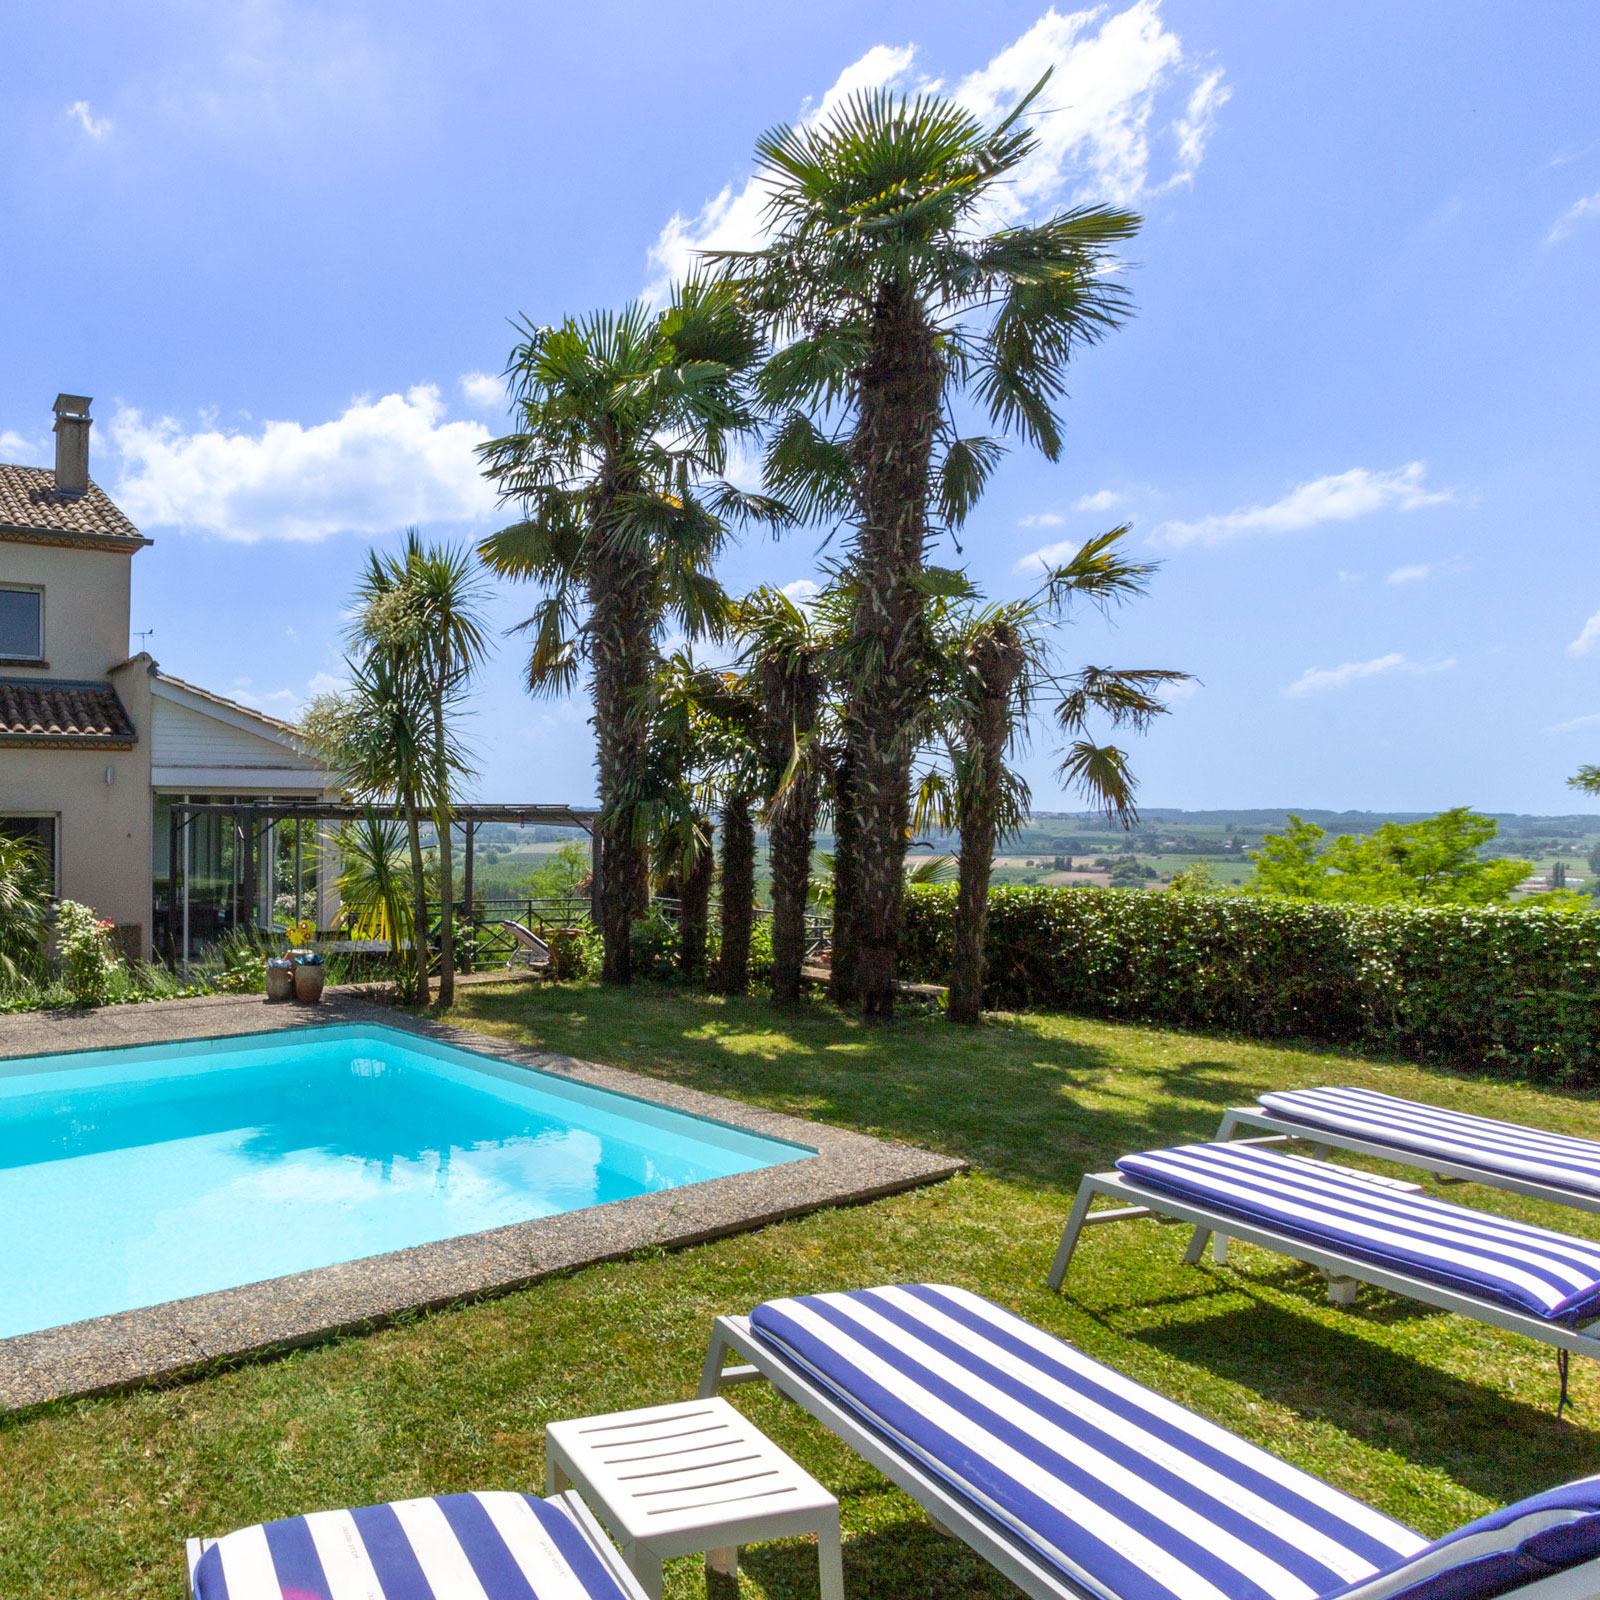 Villa Belvedere in Duras France. Views, Pool, Walk to restaurants and market